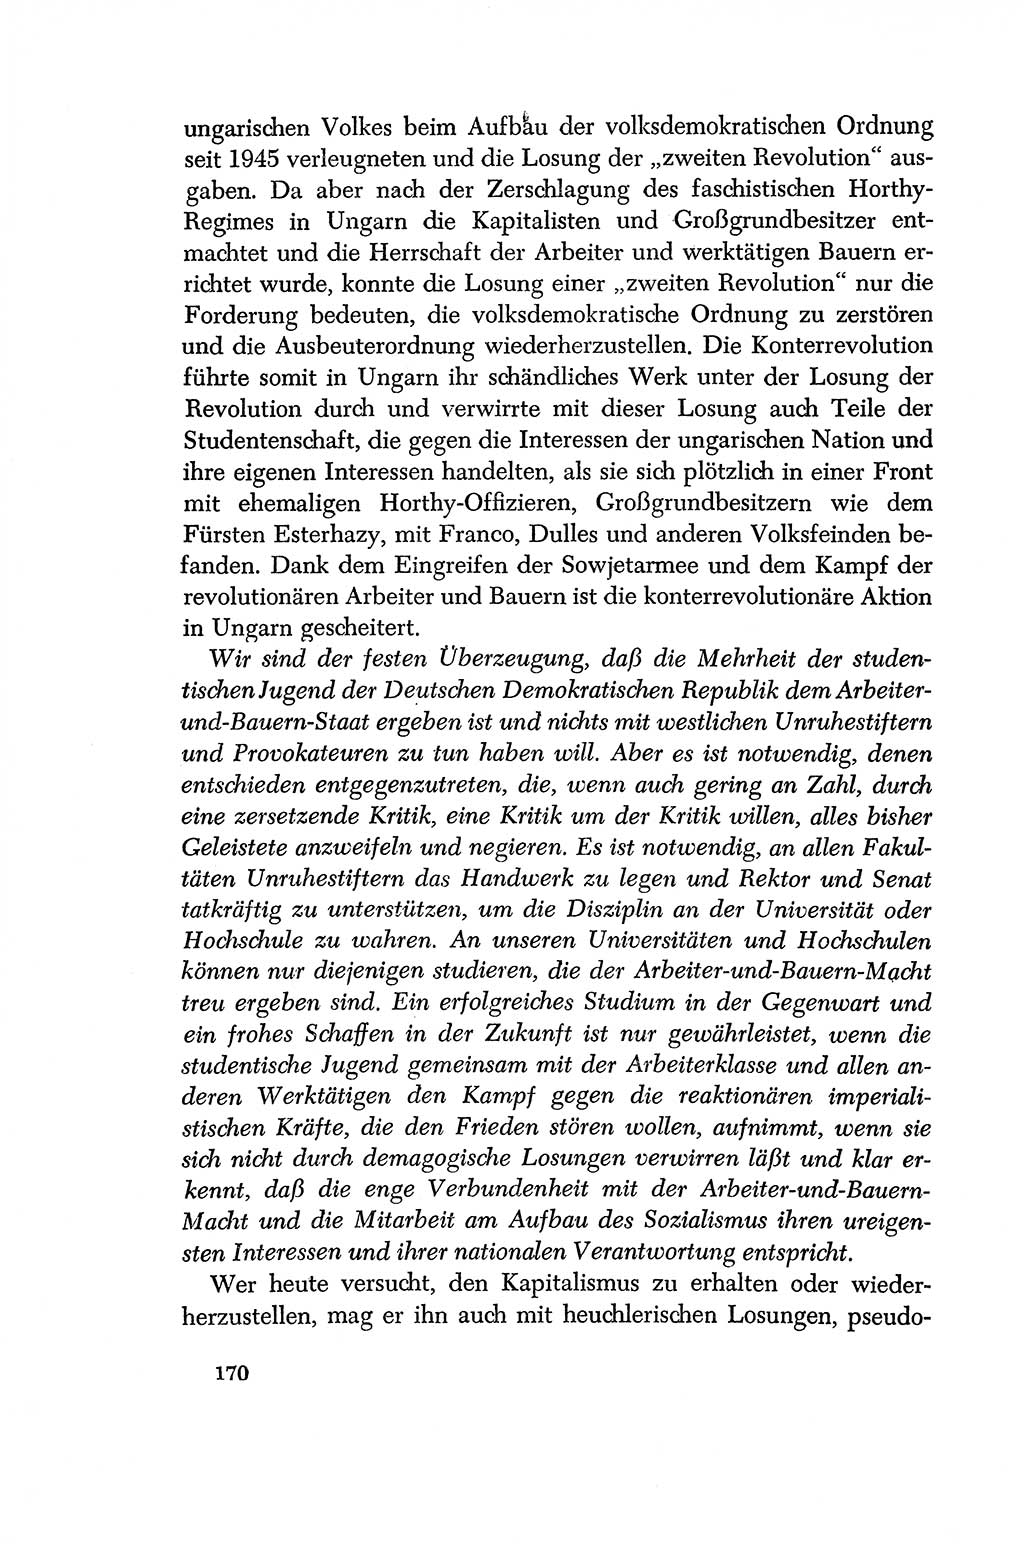 Dokumente der Sozialistischen Einheitspartei Deutschlands (SED) [Deutsche Demokratische Republik (DDR)] 1956-1957, Seite 170 (Dok. SED DDR 1956-1957, S. 170)